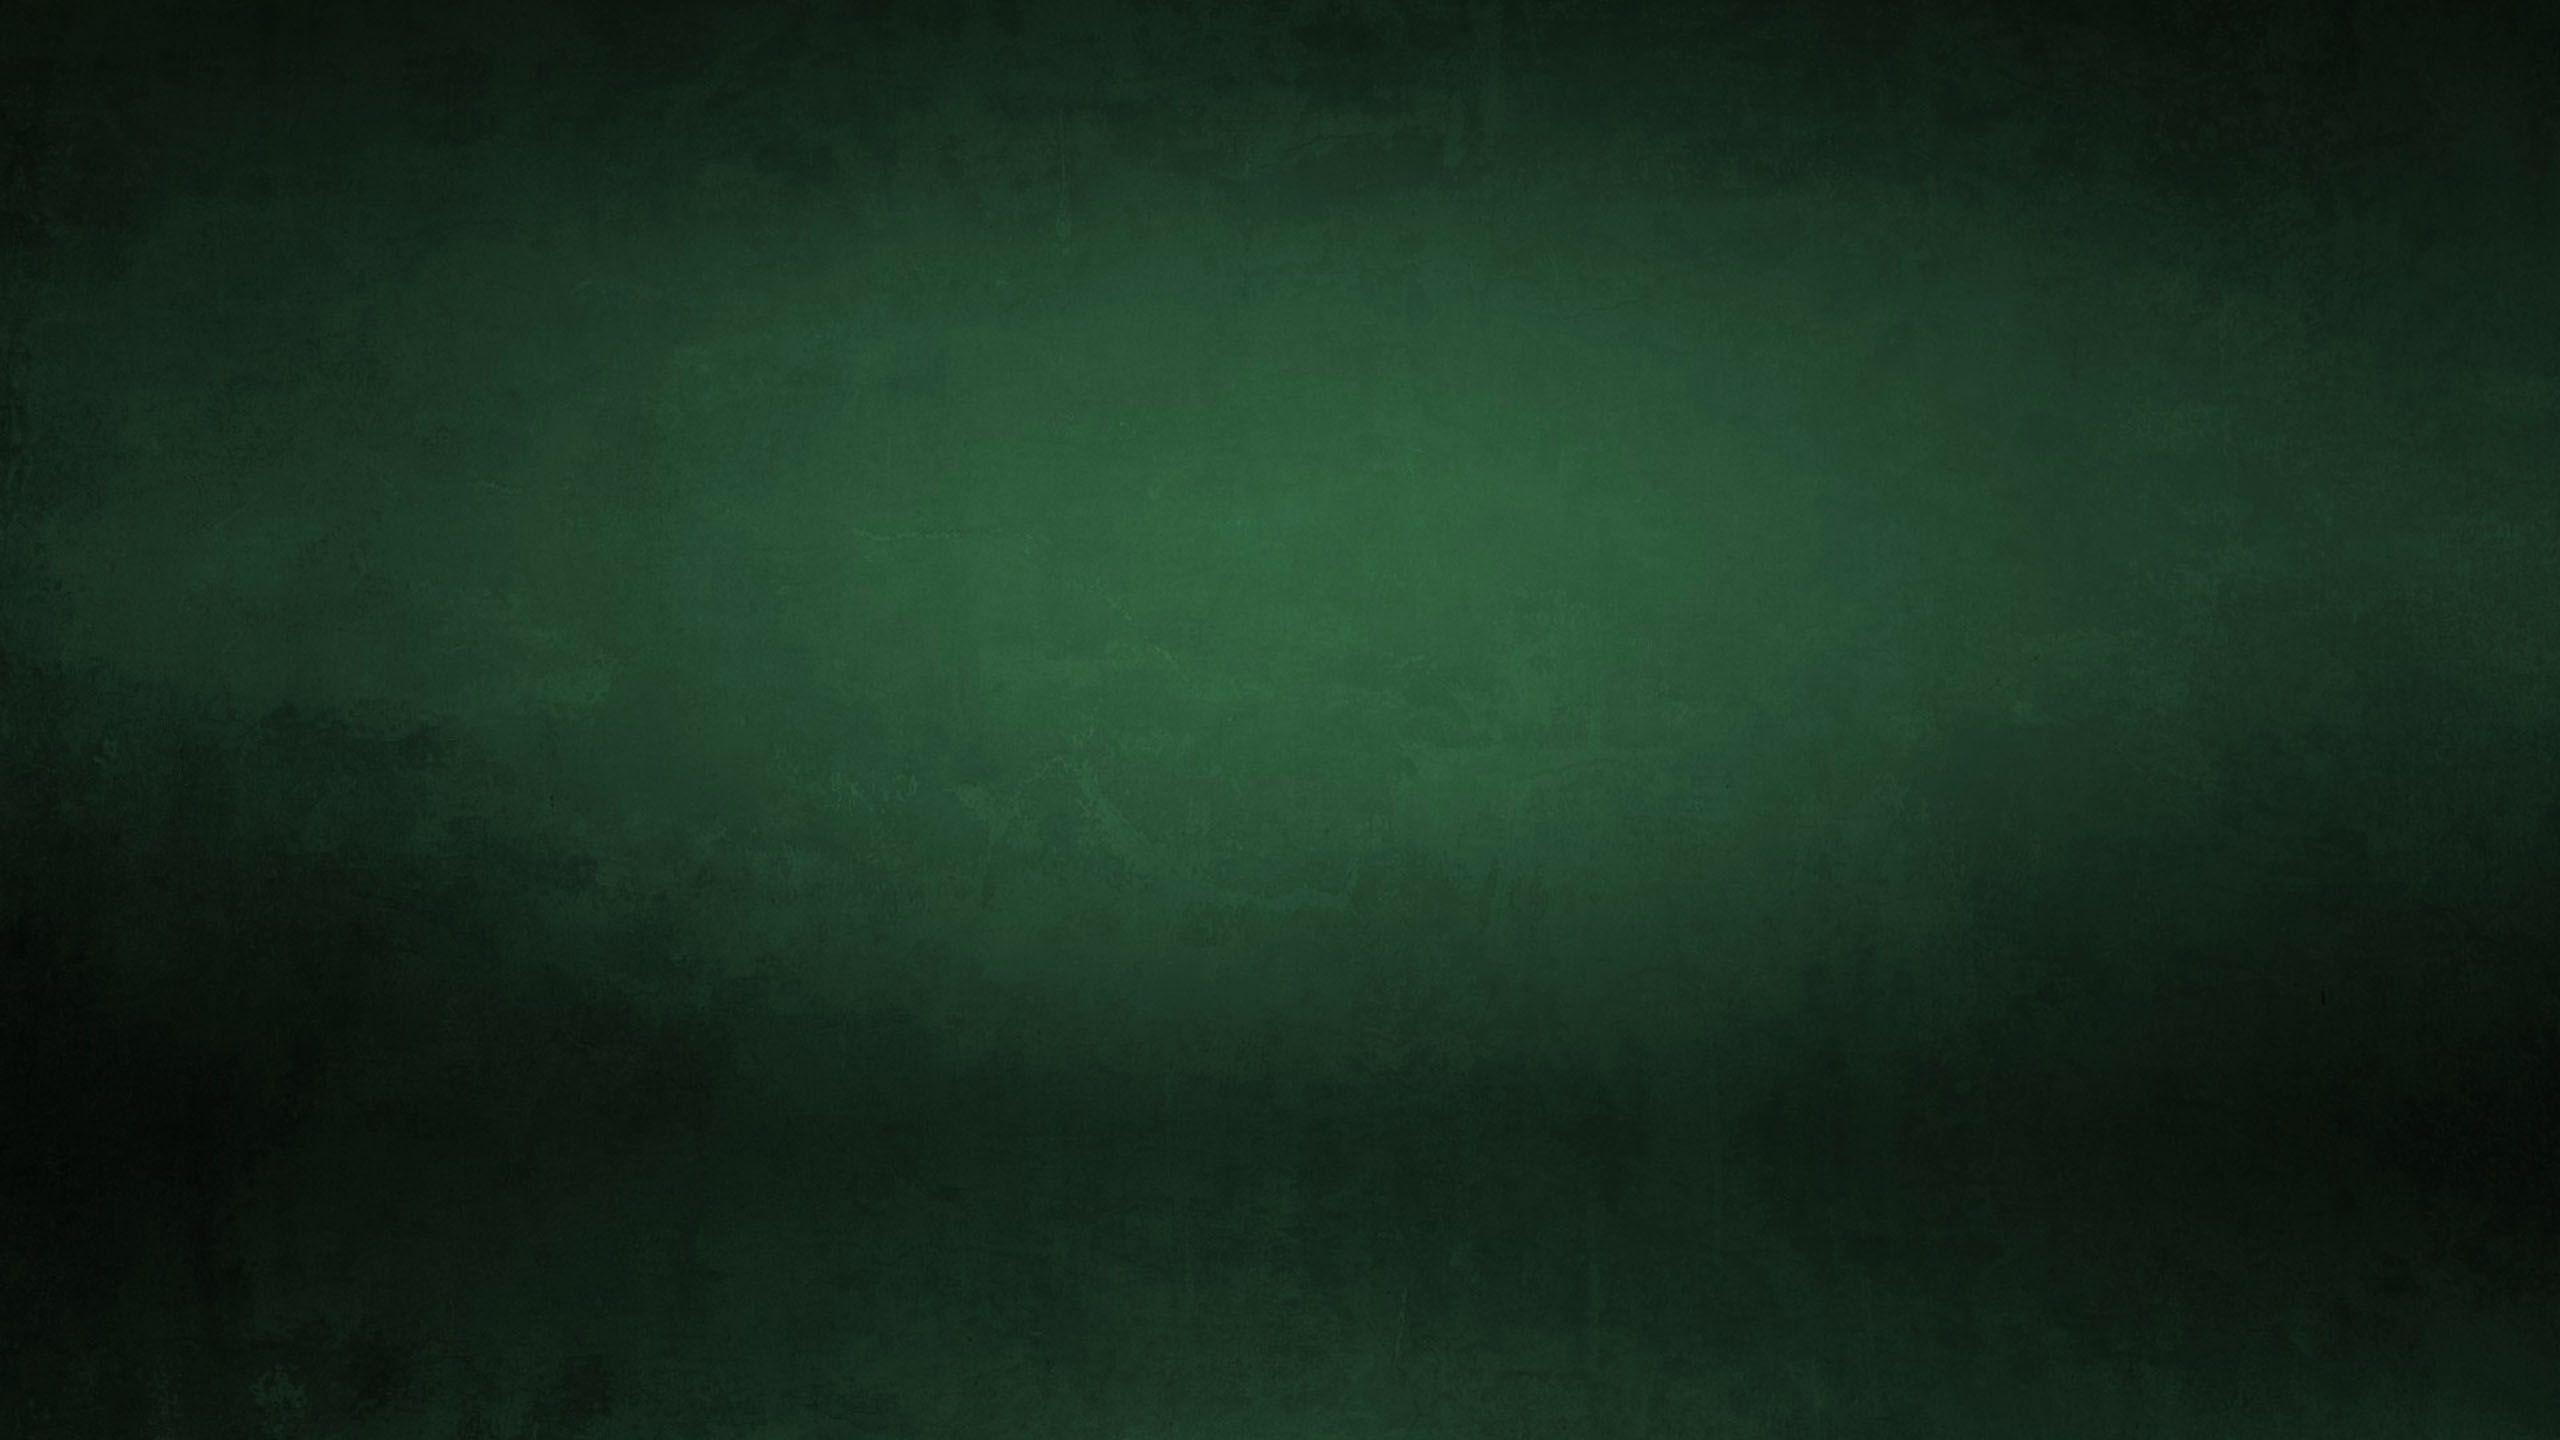 Dark Green Grunge Wallpaper Background 49803 2560x1440 px